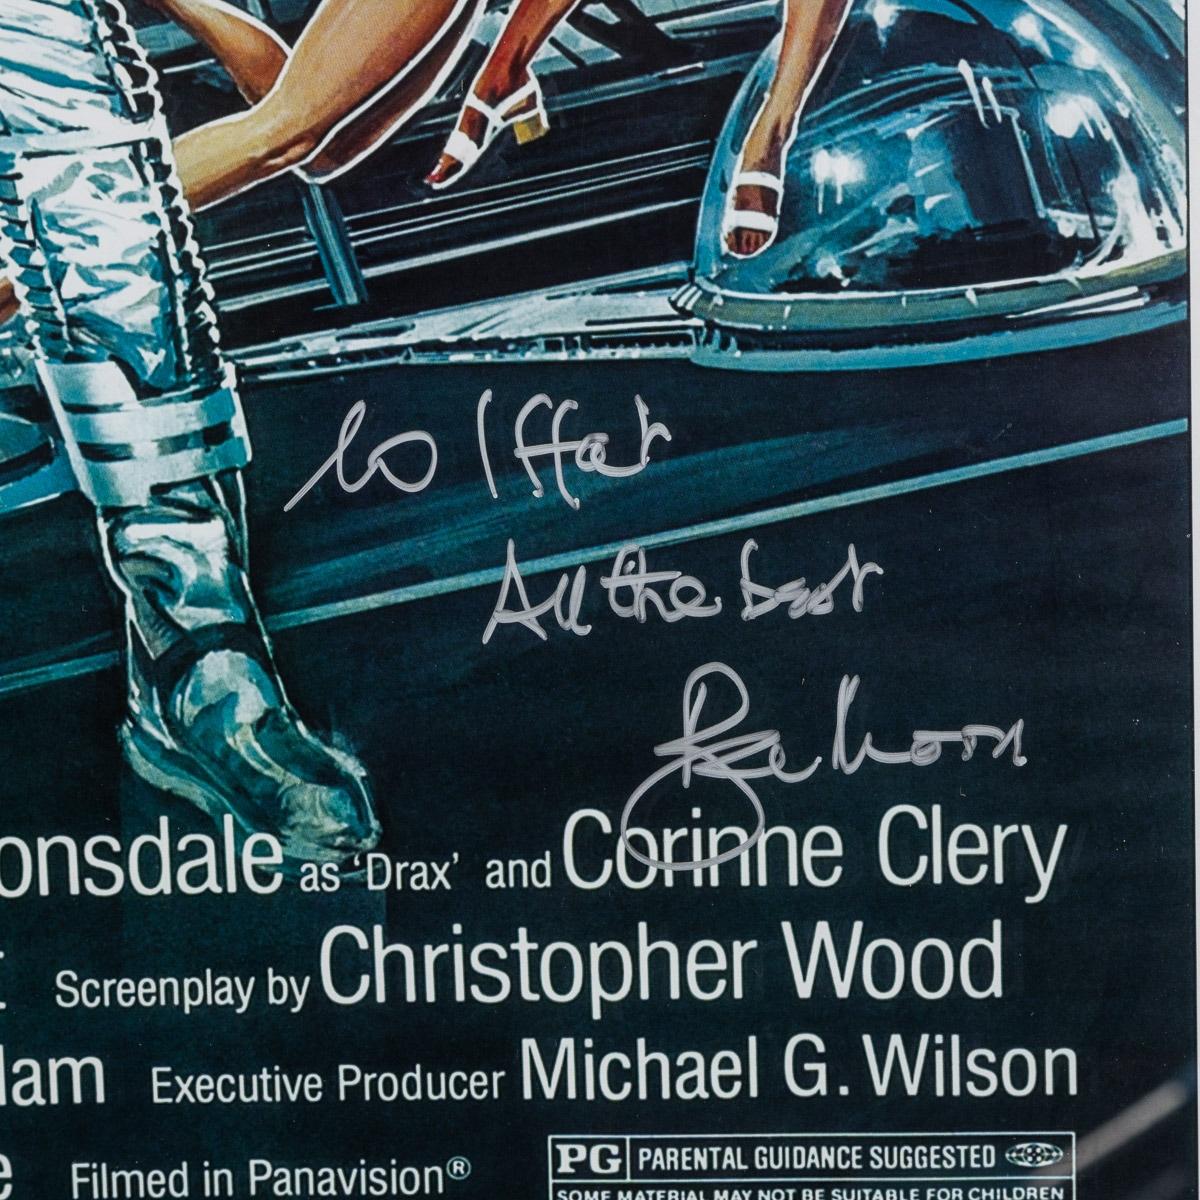 Original James Bond 007 'Moonraker' Film Poster, Signed by Roger Moore, c.1979 For Sale 9